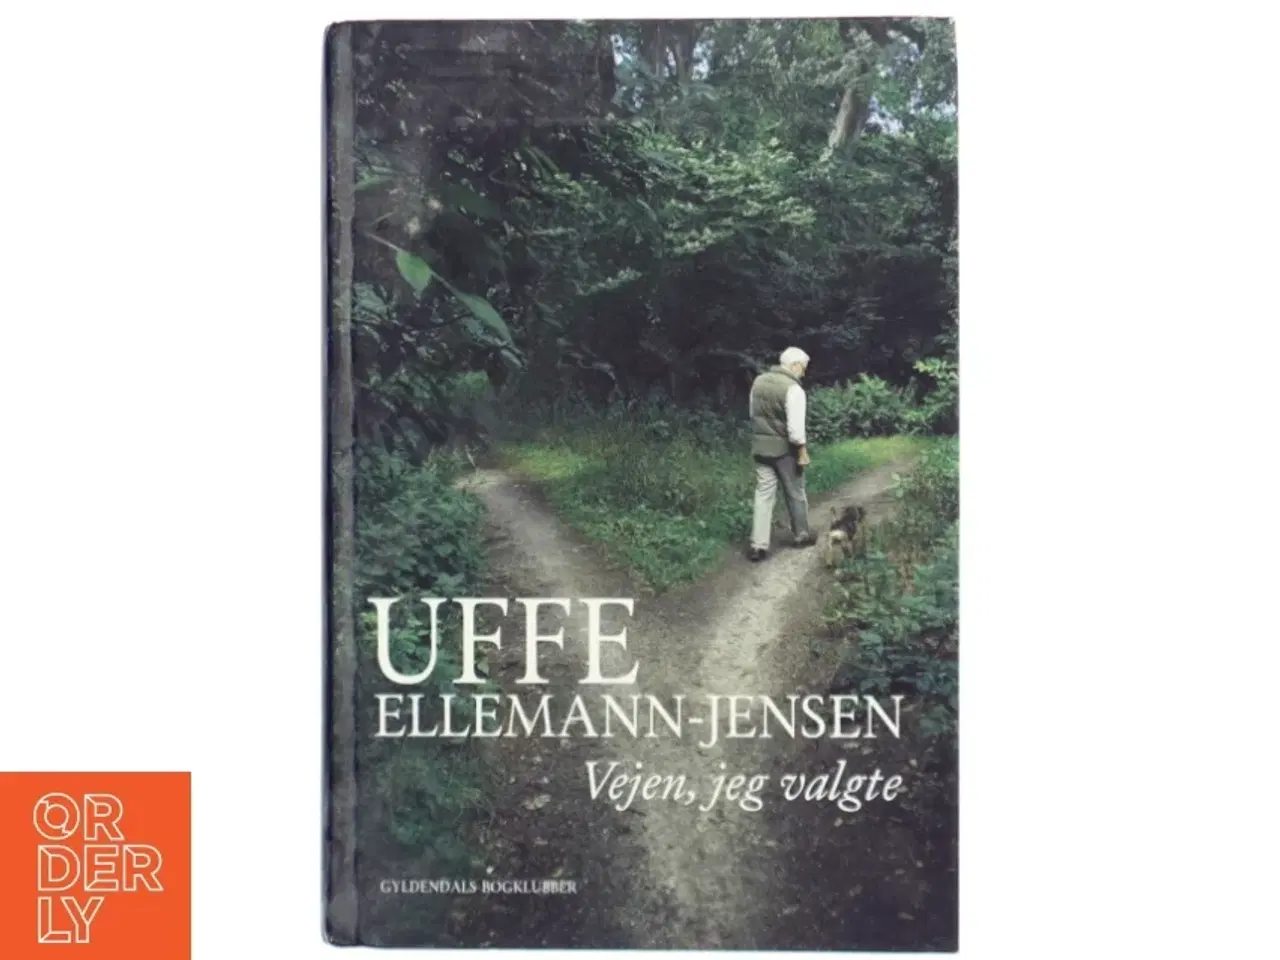 Billede 1 - Uffe Ellemann-Jensen, vejen jeg valgte